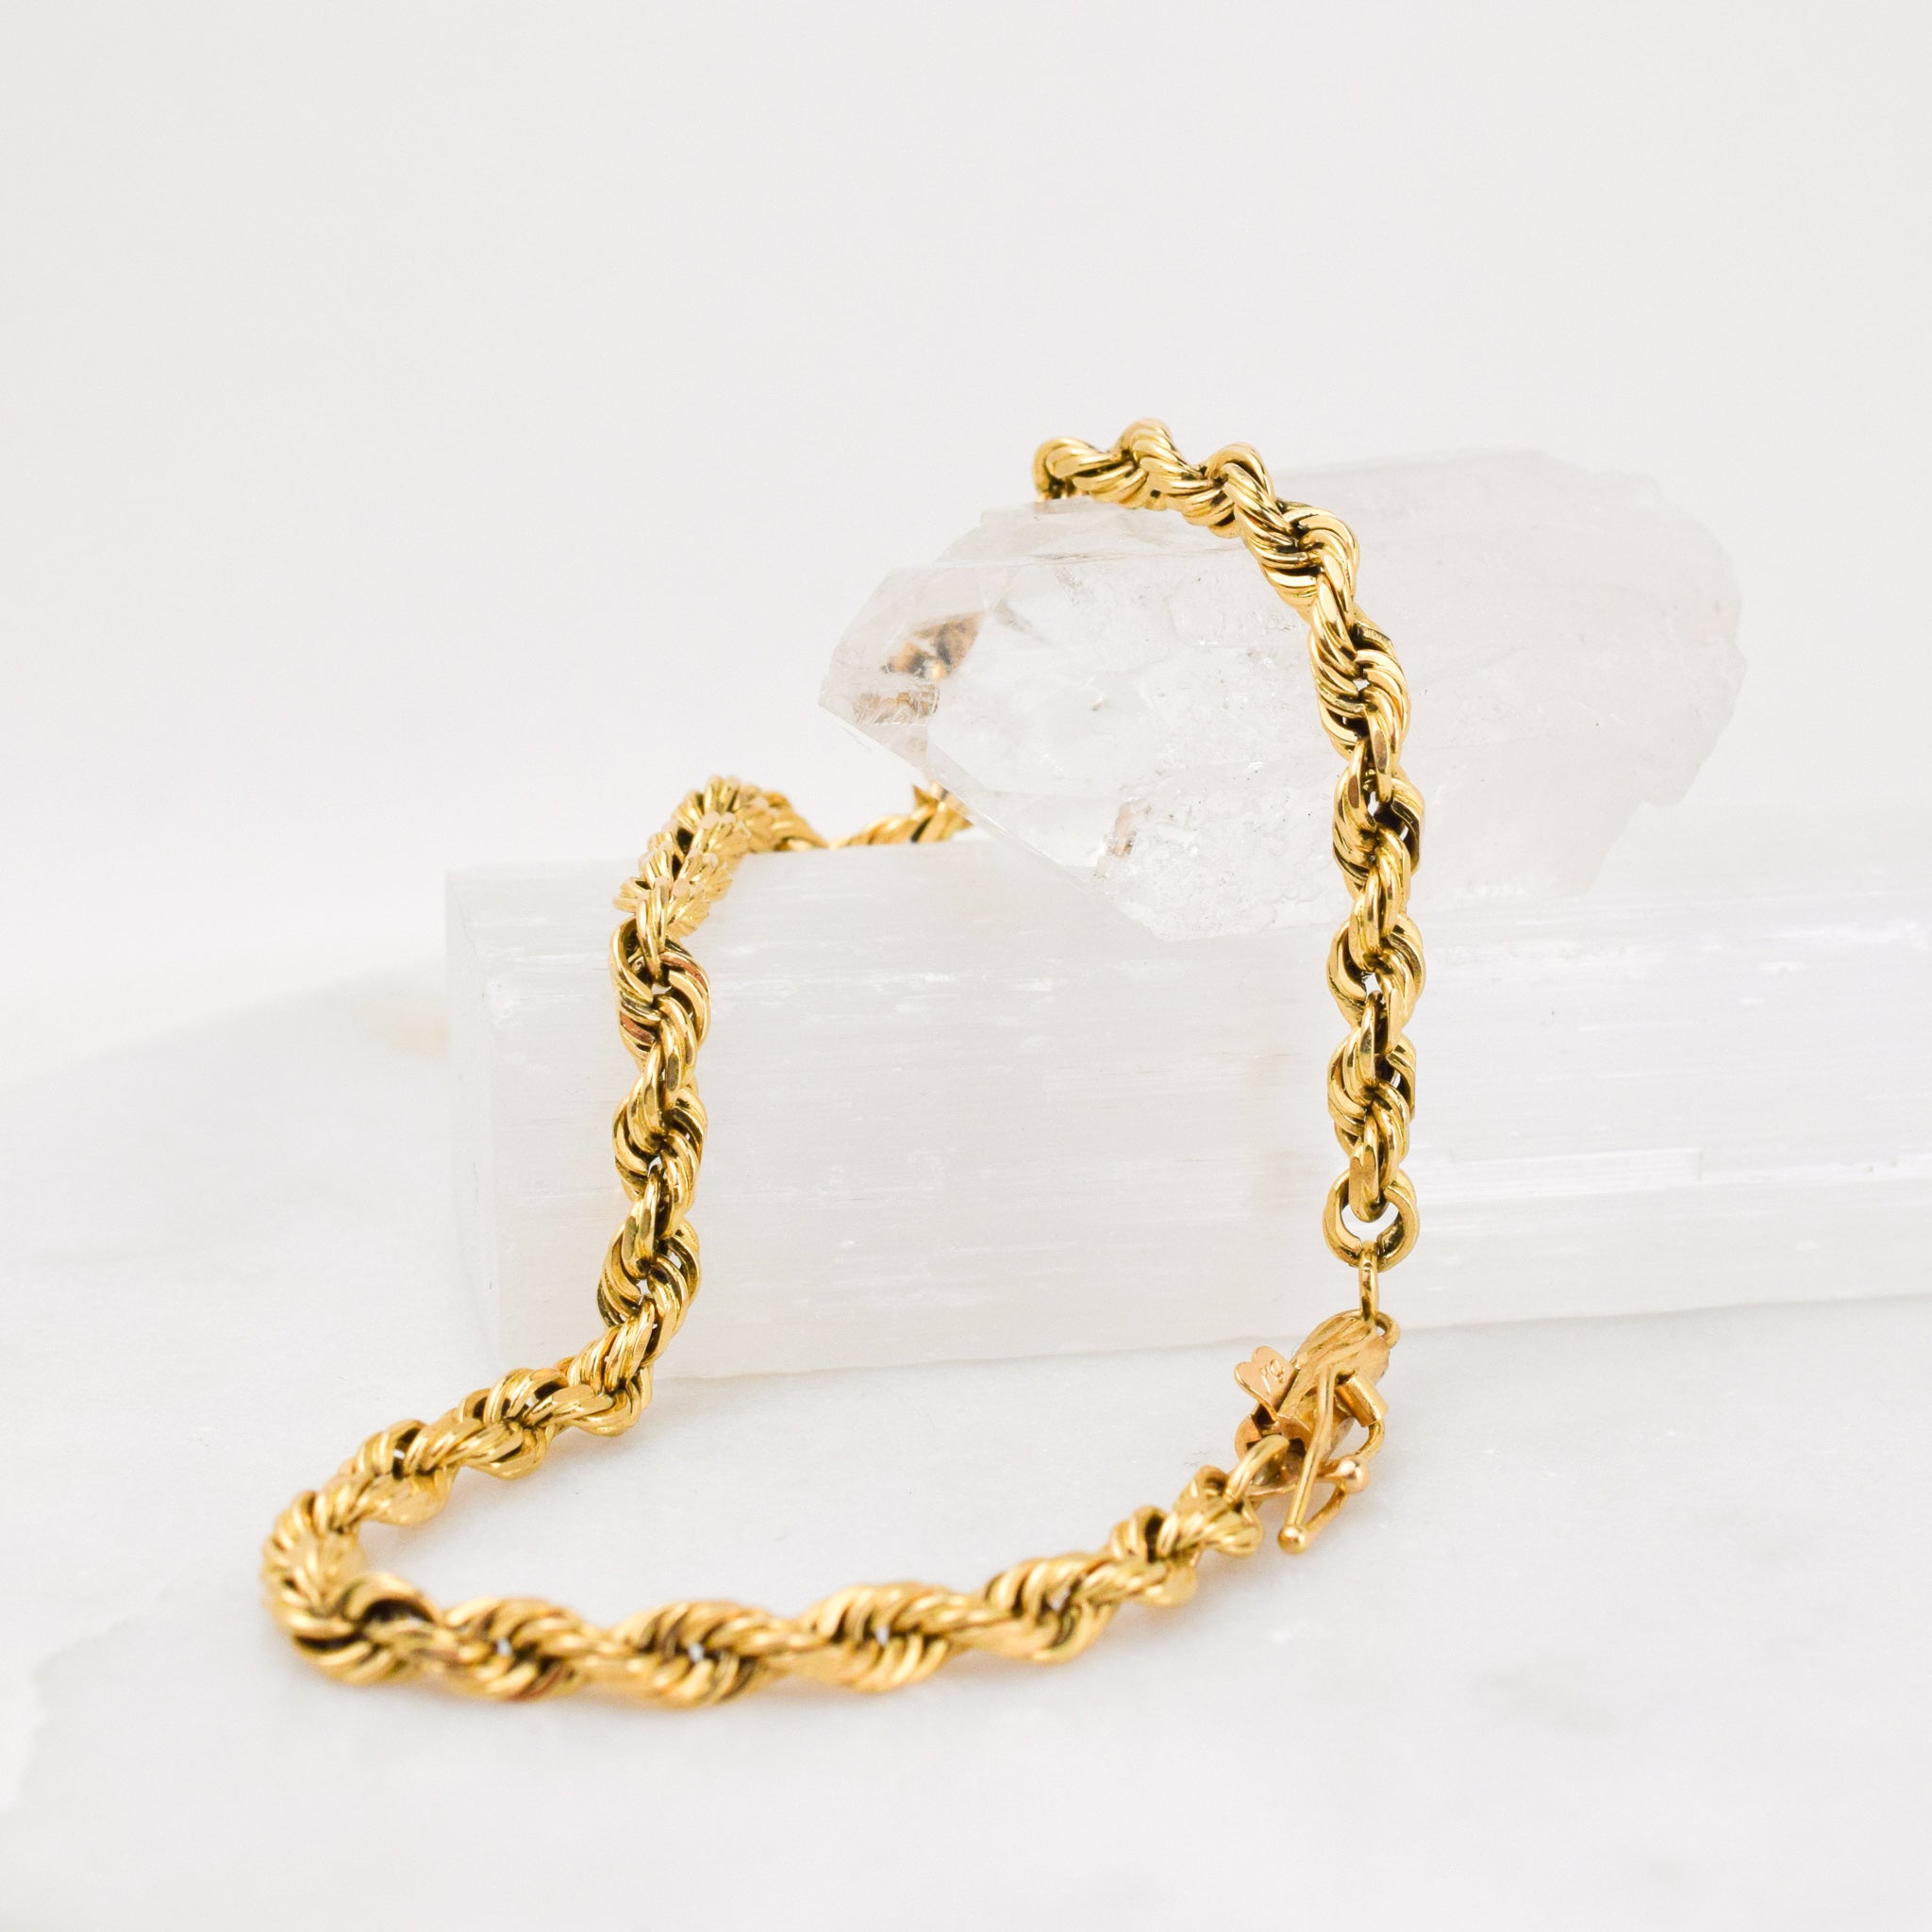 Diamond rope bracelet – Dear Southern Lady